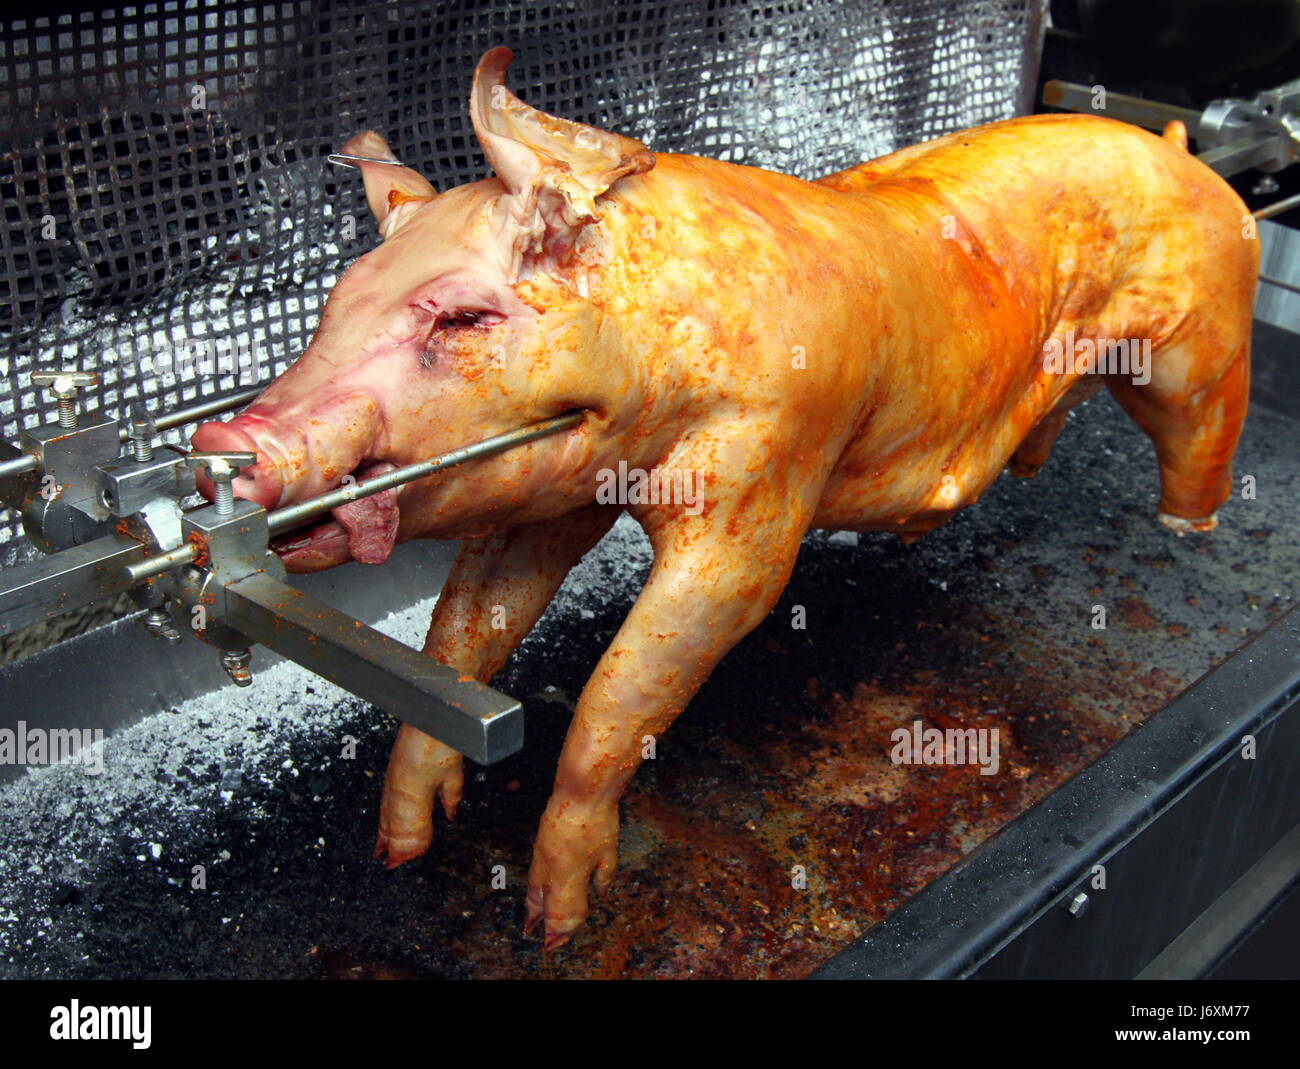 Grill Barbecue Grill Ferkel Bbq Bar-b-Q Spanferkel Schweinefleisch Schwein Grill  Grill Stockfotografie - Alamy